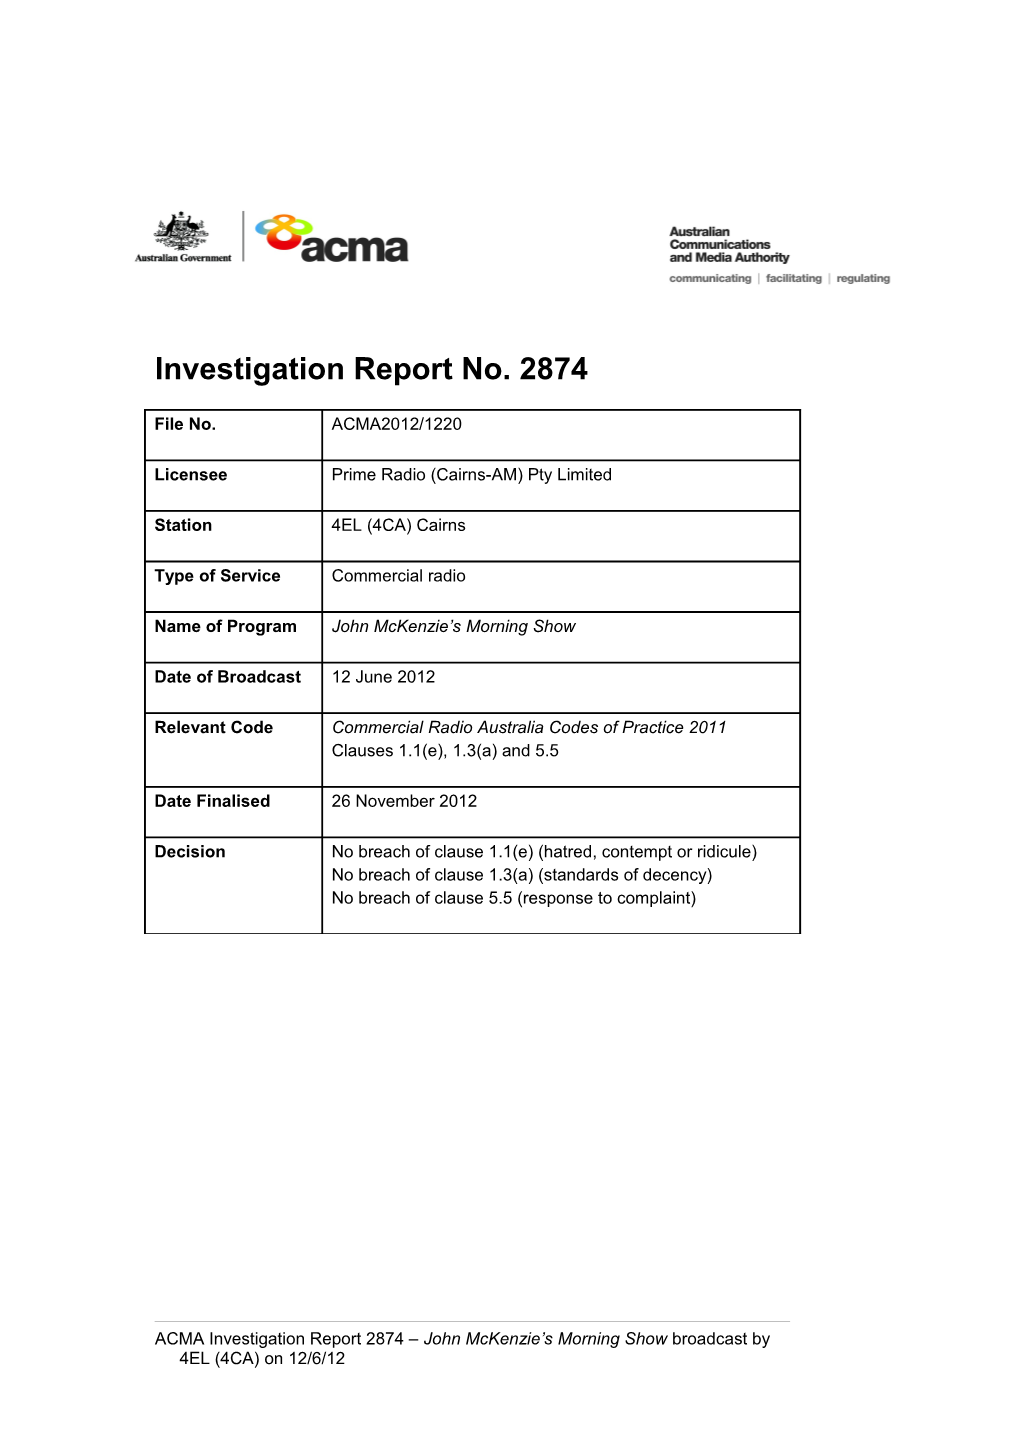 4EL (4CA) - ACMA Investigation Report 2874